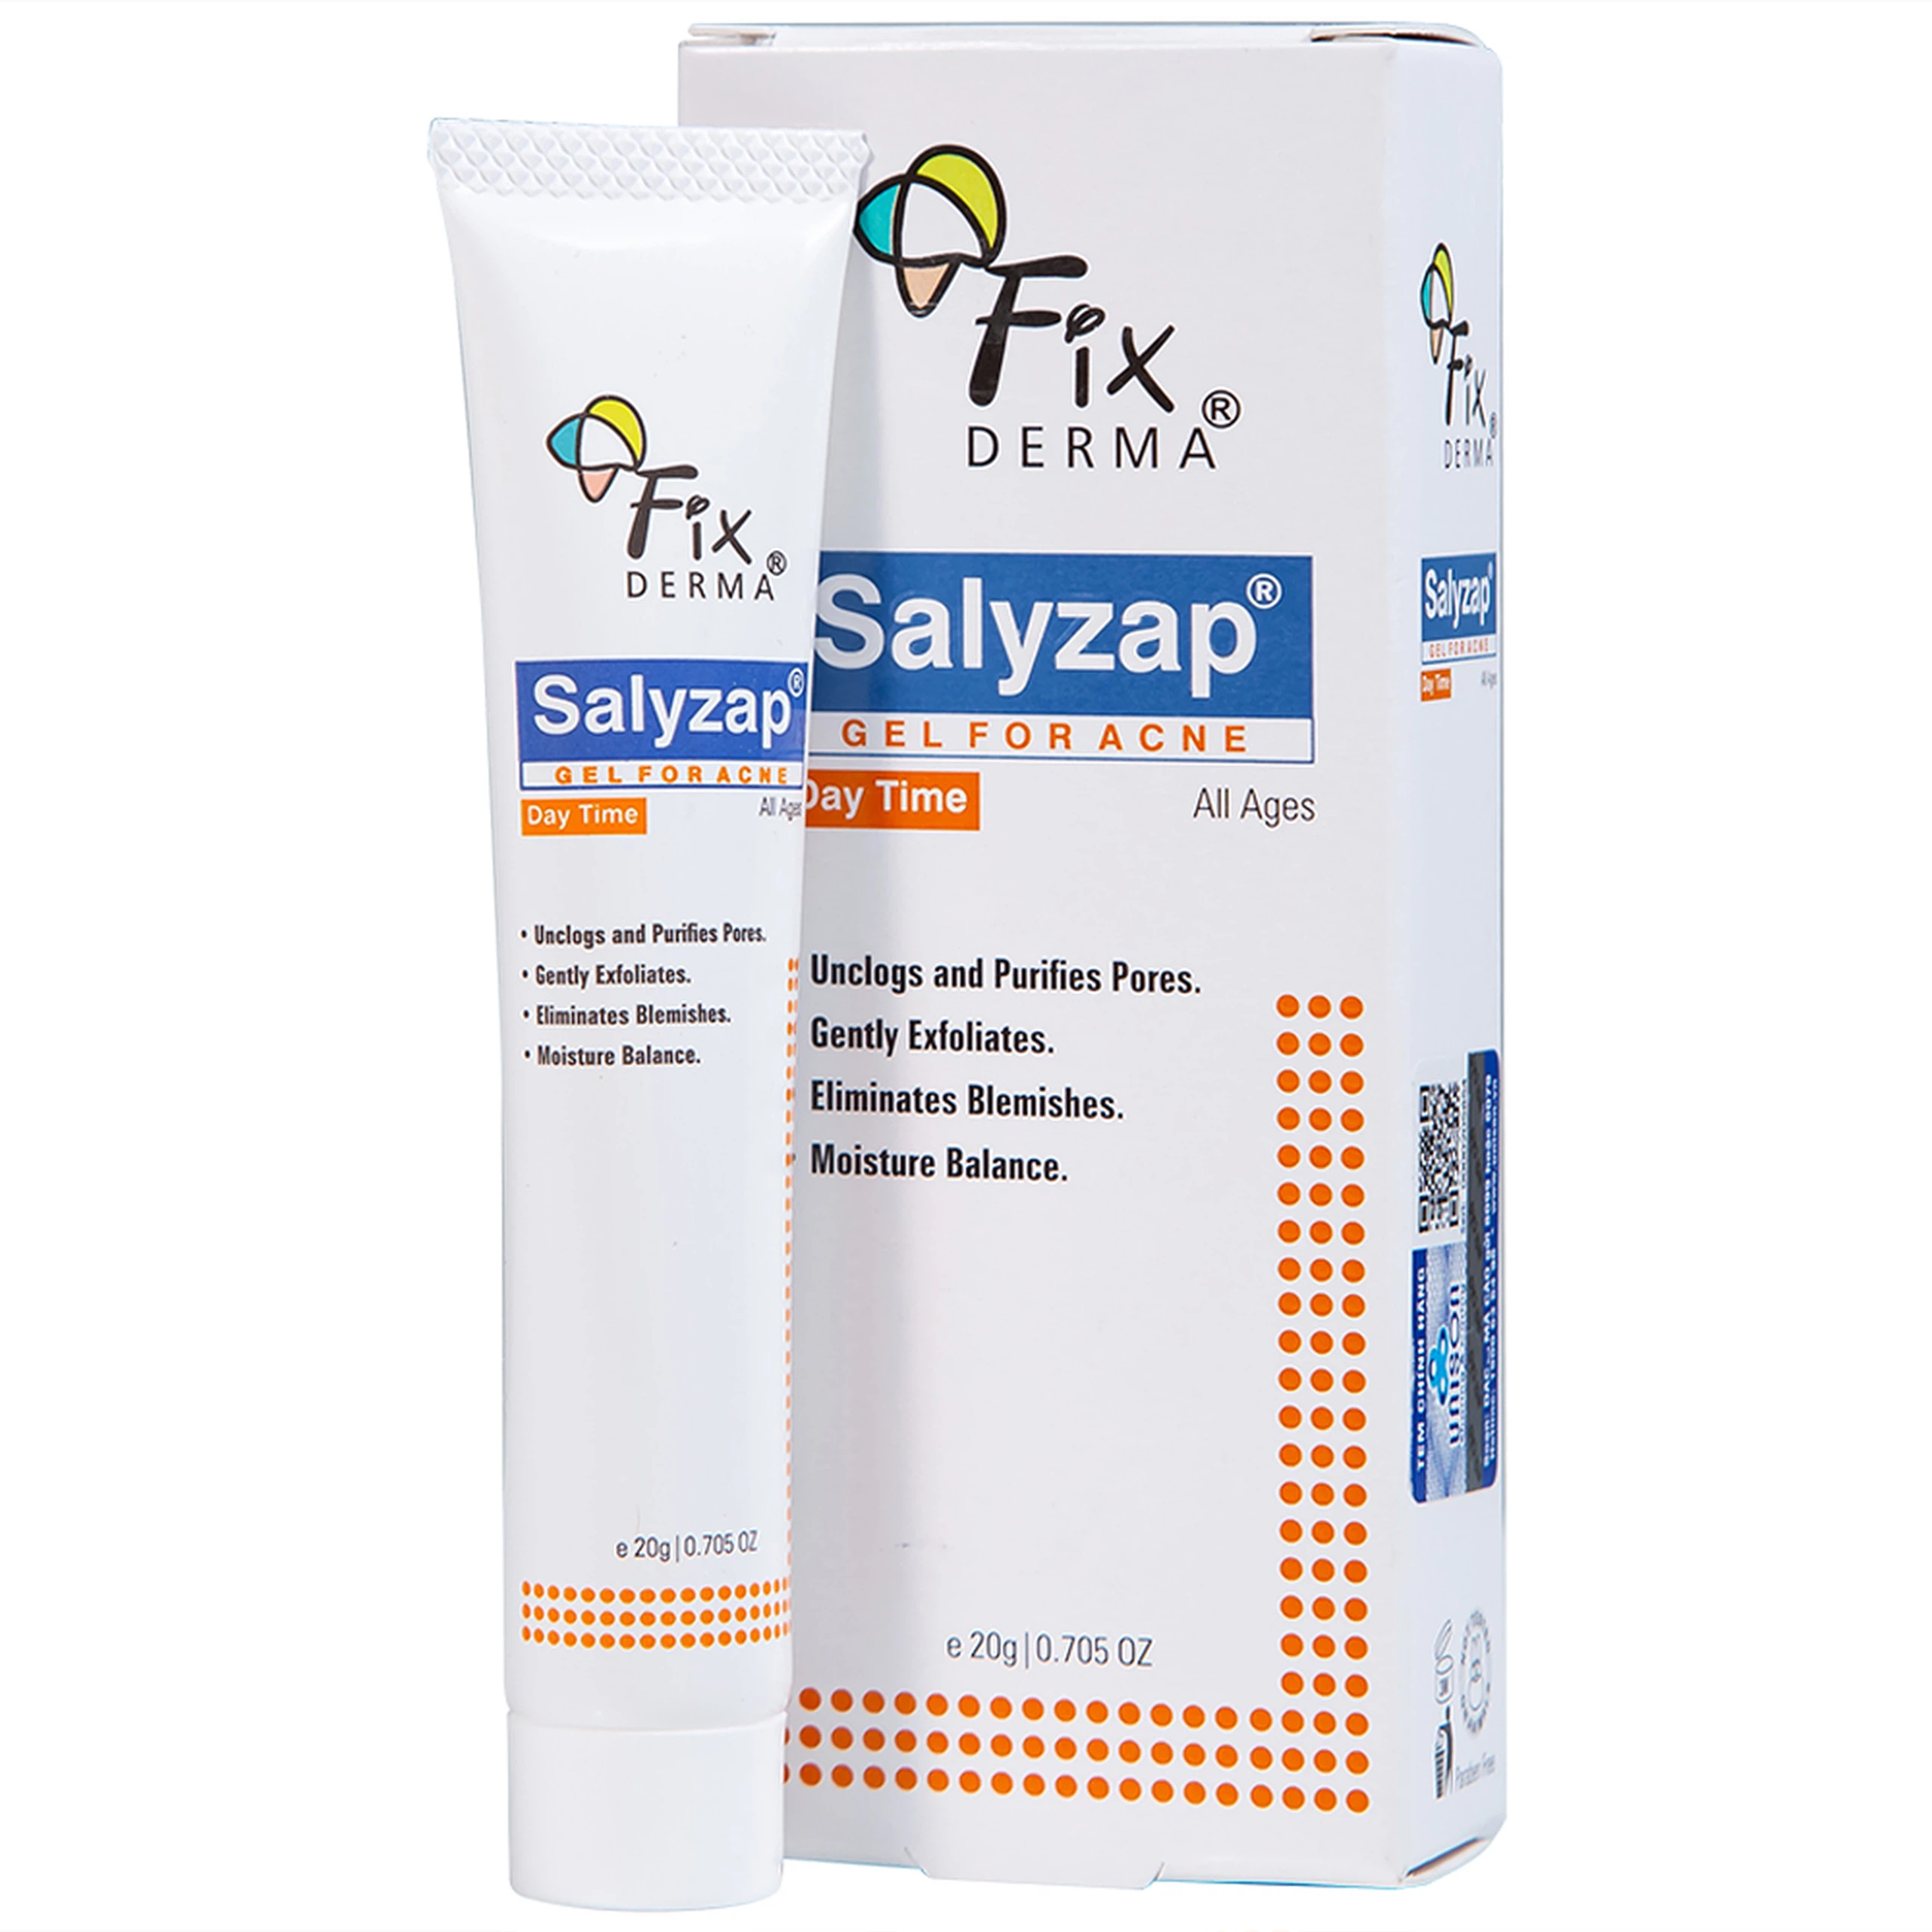 Gel Fixderma Salyzap Day Time giảm mụn, ngăn ngừa hình thành nhân mụn mới (20g)